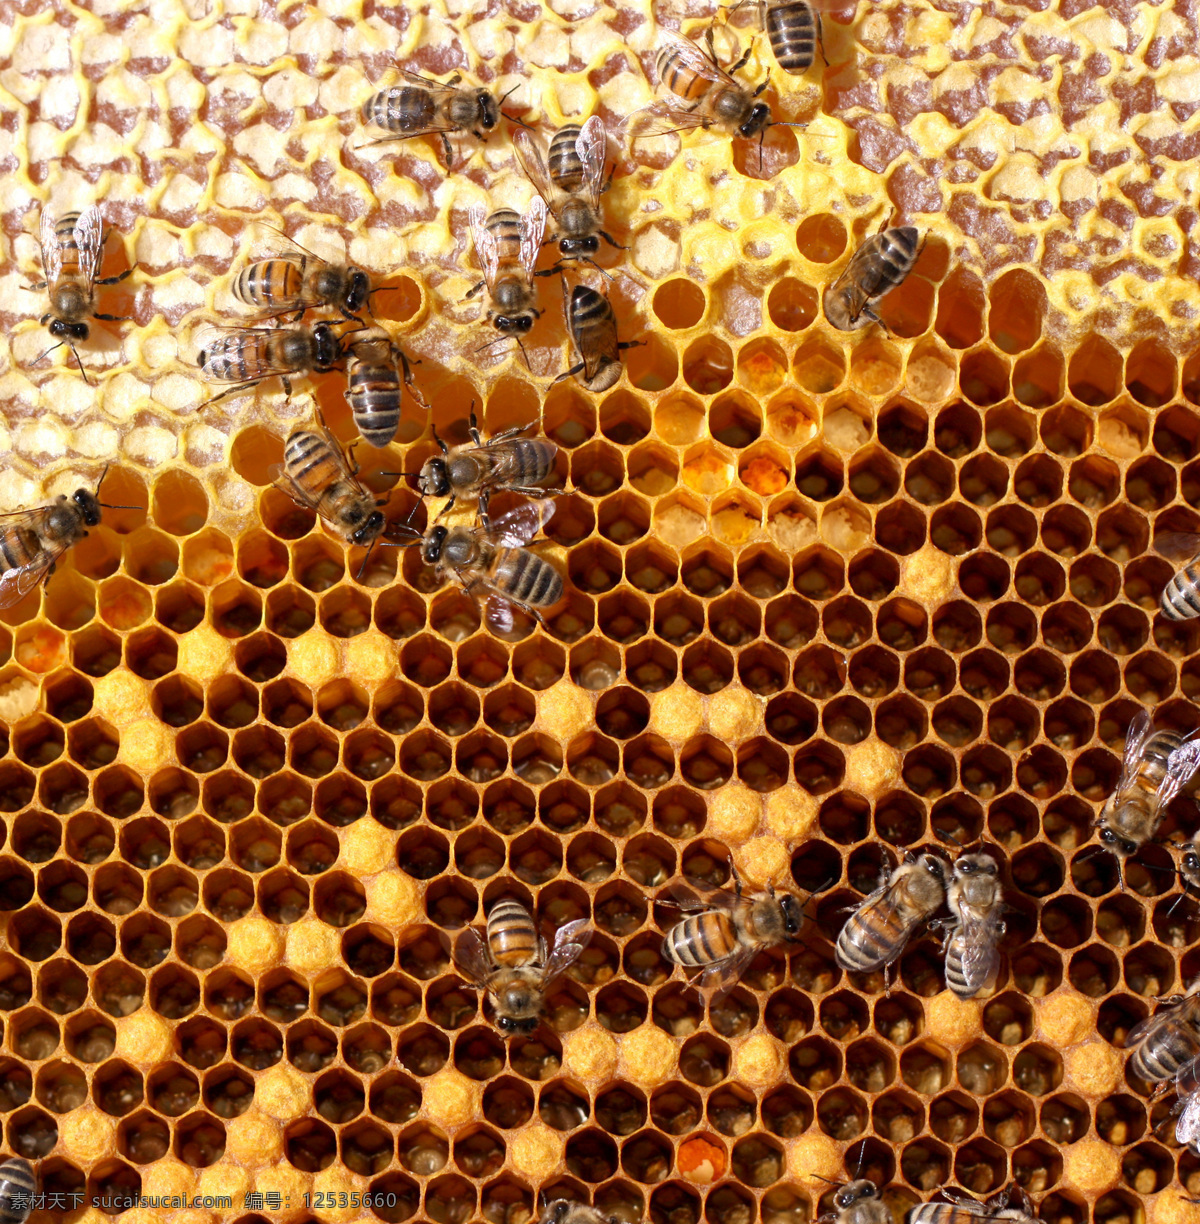 蜂窝 上 忙碌 蜜蜂 蜂蜜 蜂胶 黄色 补品 昆虫世界 生物世界